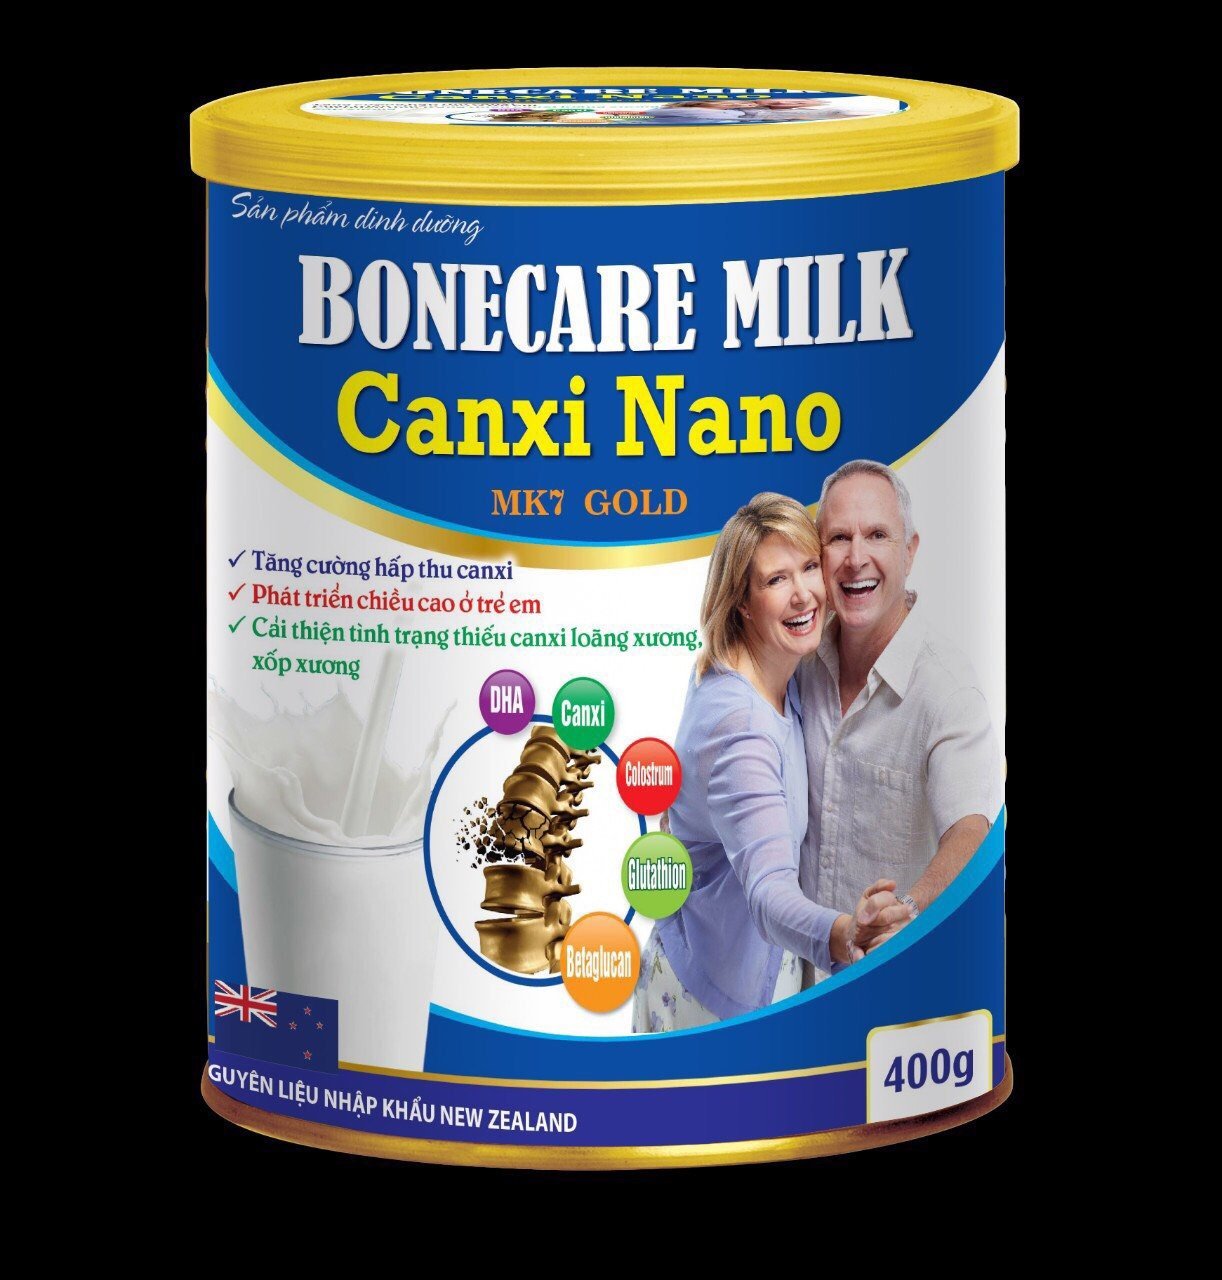 Sữa Bột Tăng Chiều Cao Bonecare Milk Canxi Nano MK7 Gold- Tăng Cường Hấp Thu Canxi, Phát Triển Chiều Cao Ở Trẻ Em, Cải Thiện Tình Trạng Thiếu Canxi, Loãng Xương, Xốp Xương ở người lớn